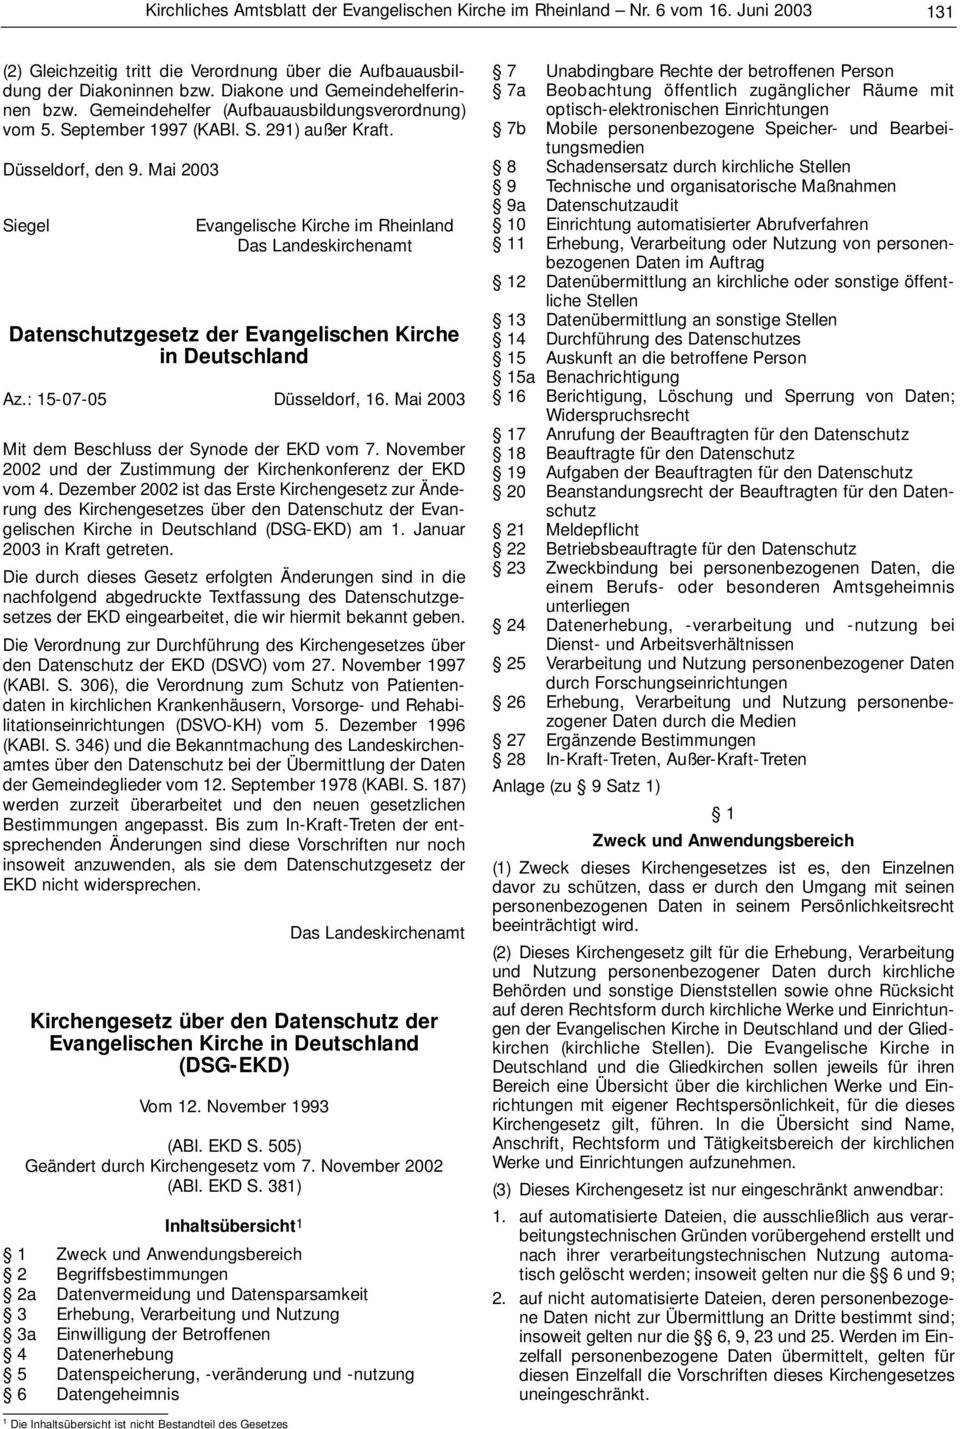 Mai 2003 Siegel Evangelische Kirche im Rheinland Das Landeskirchenamt Datenschutzgesetz der Evangelischen Kirche in Deutschland Az.: 15-07-05 Düsseldorf, 16.